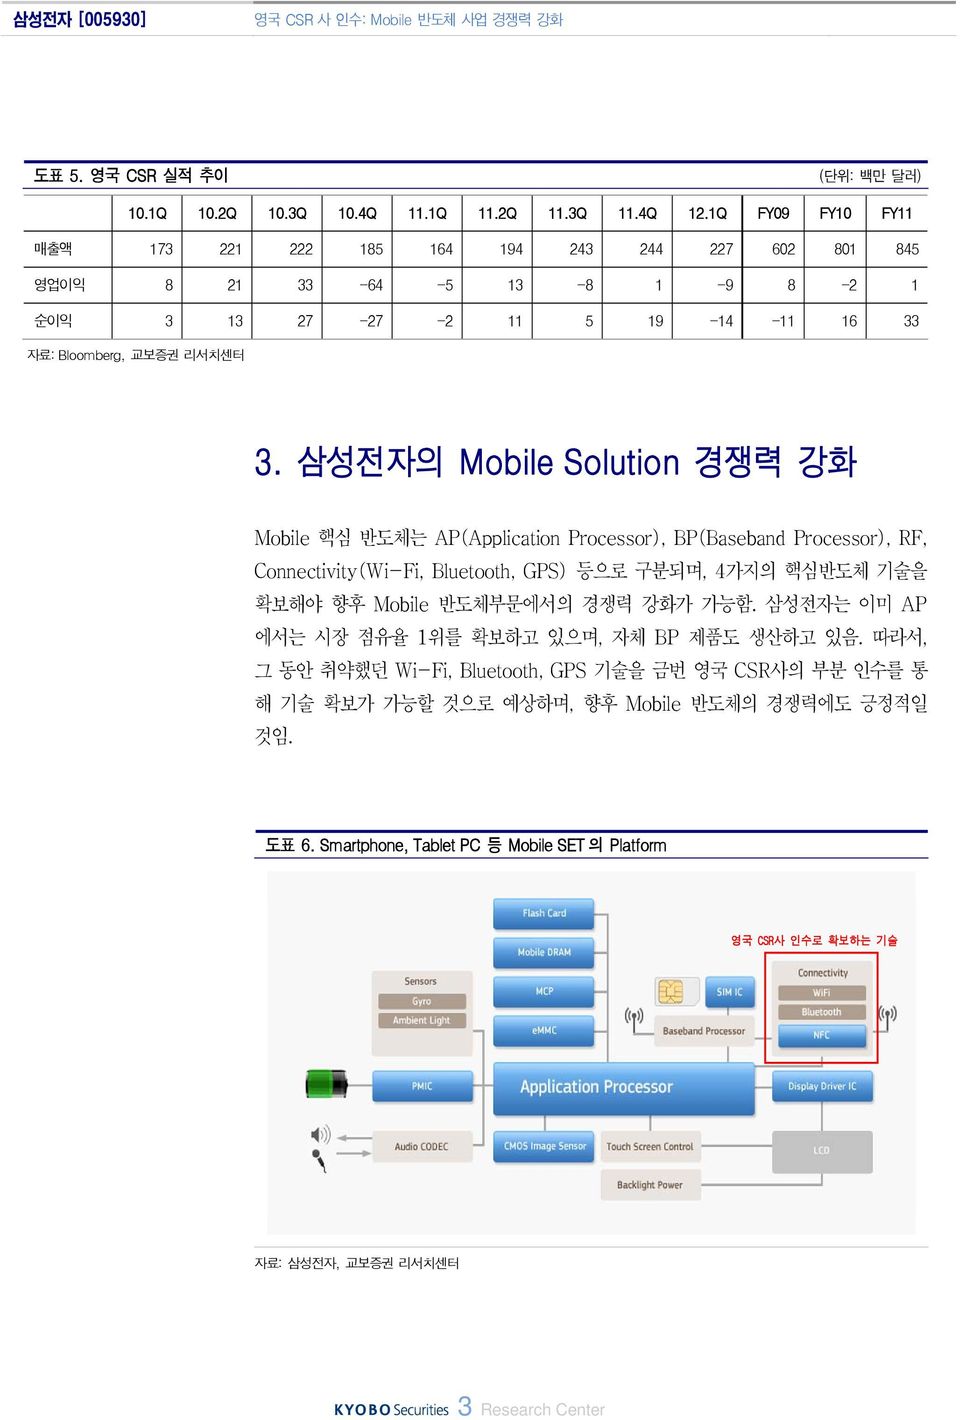 삼성전자의 Mobile Solution 경쟁력 강화 Mobile 핵심 반도체는 AP(Application Processor), BP(Baseband Processor), RF, Connectivity(Wi-Fi, Bluetooth, GPS) 등으로 구분되며, 4가지의 핵심반도체 기술을 확보해야 향후 Mobile